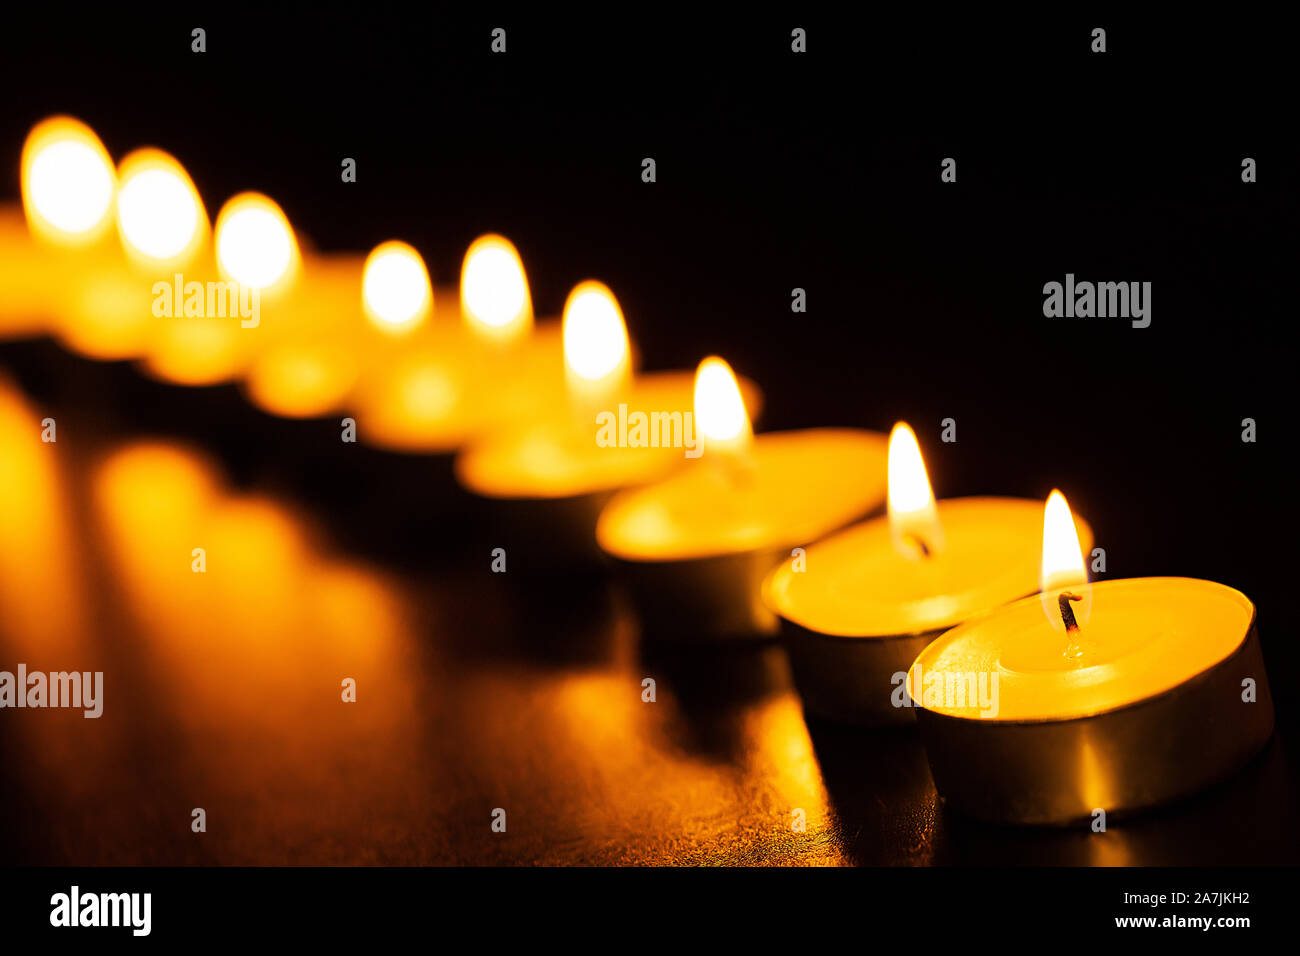 Nadie Shot velas en la noche de la línea de iluminación de velas ilumina durante el Festival de Diwali celebración Foto de stock